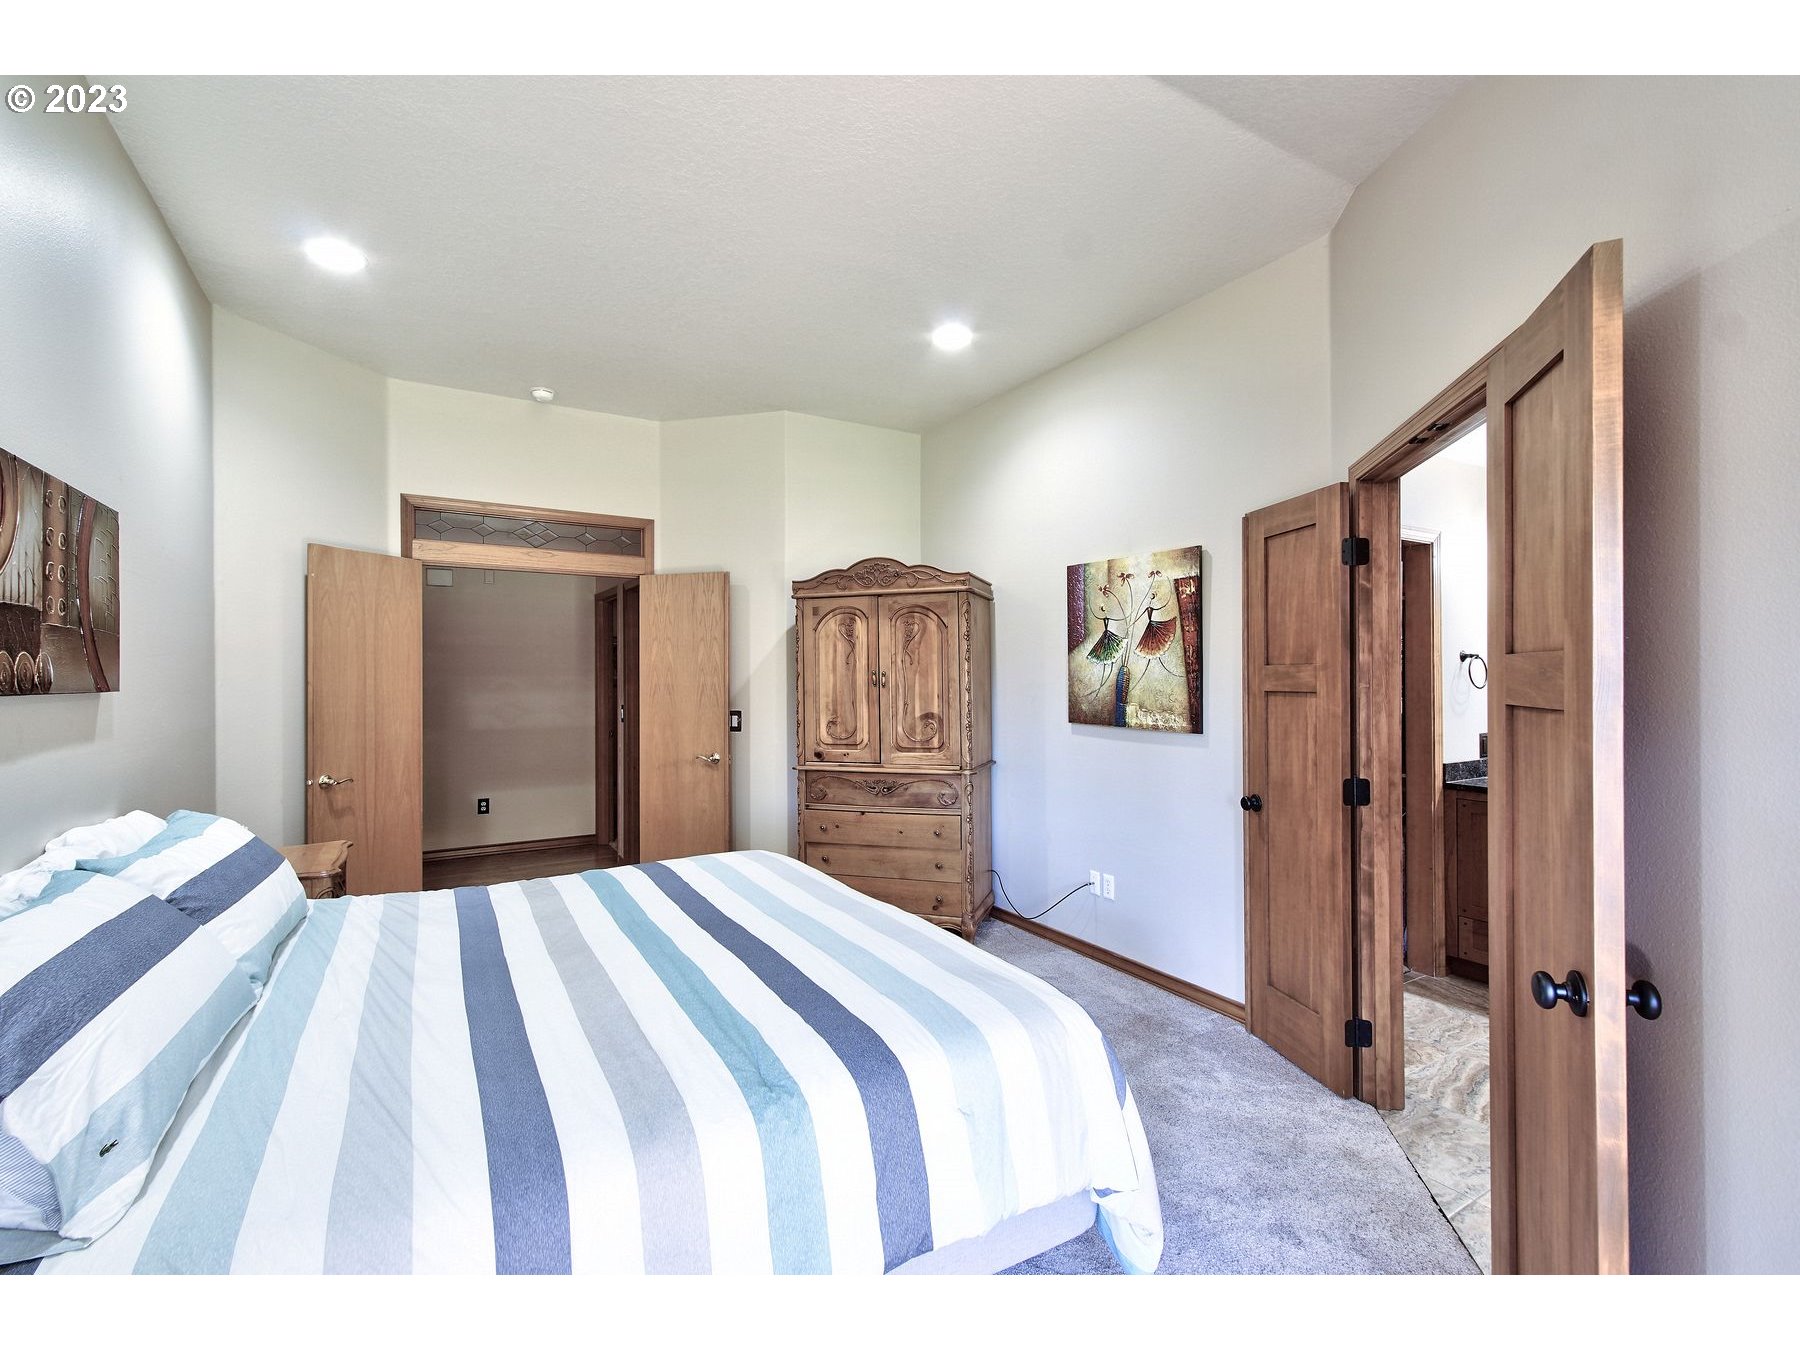 Owner's Suite Bedroom-Main